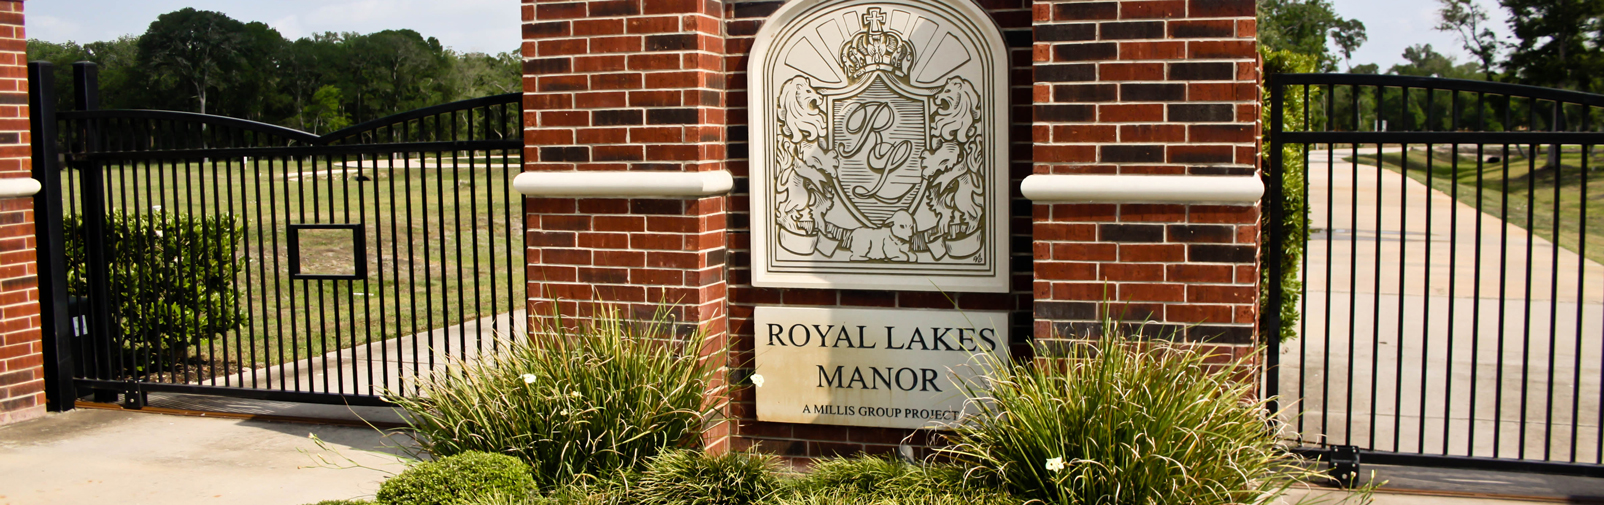 Royal Lakes Manor